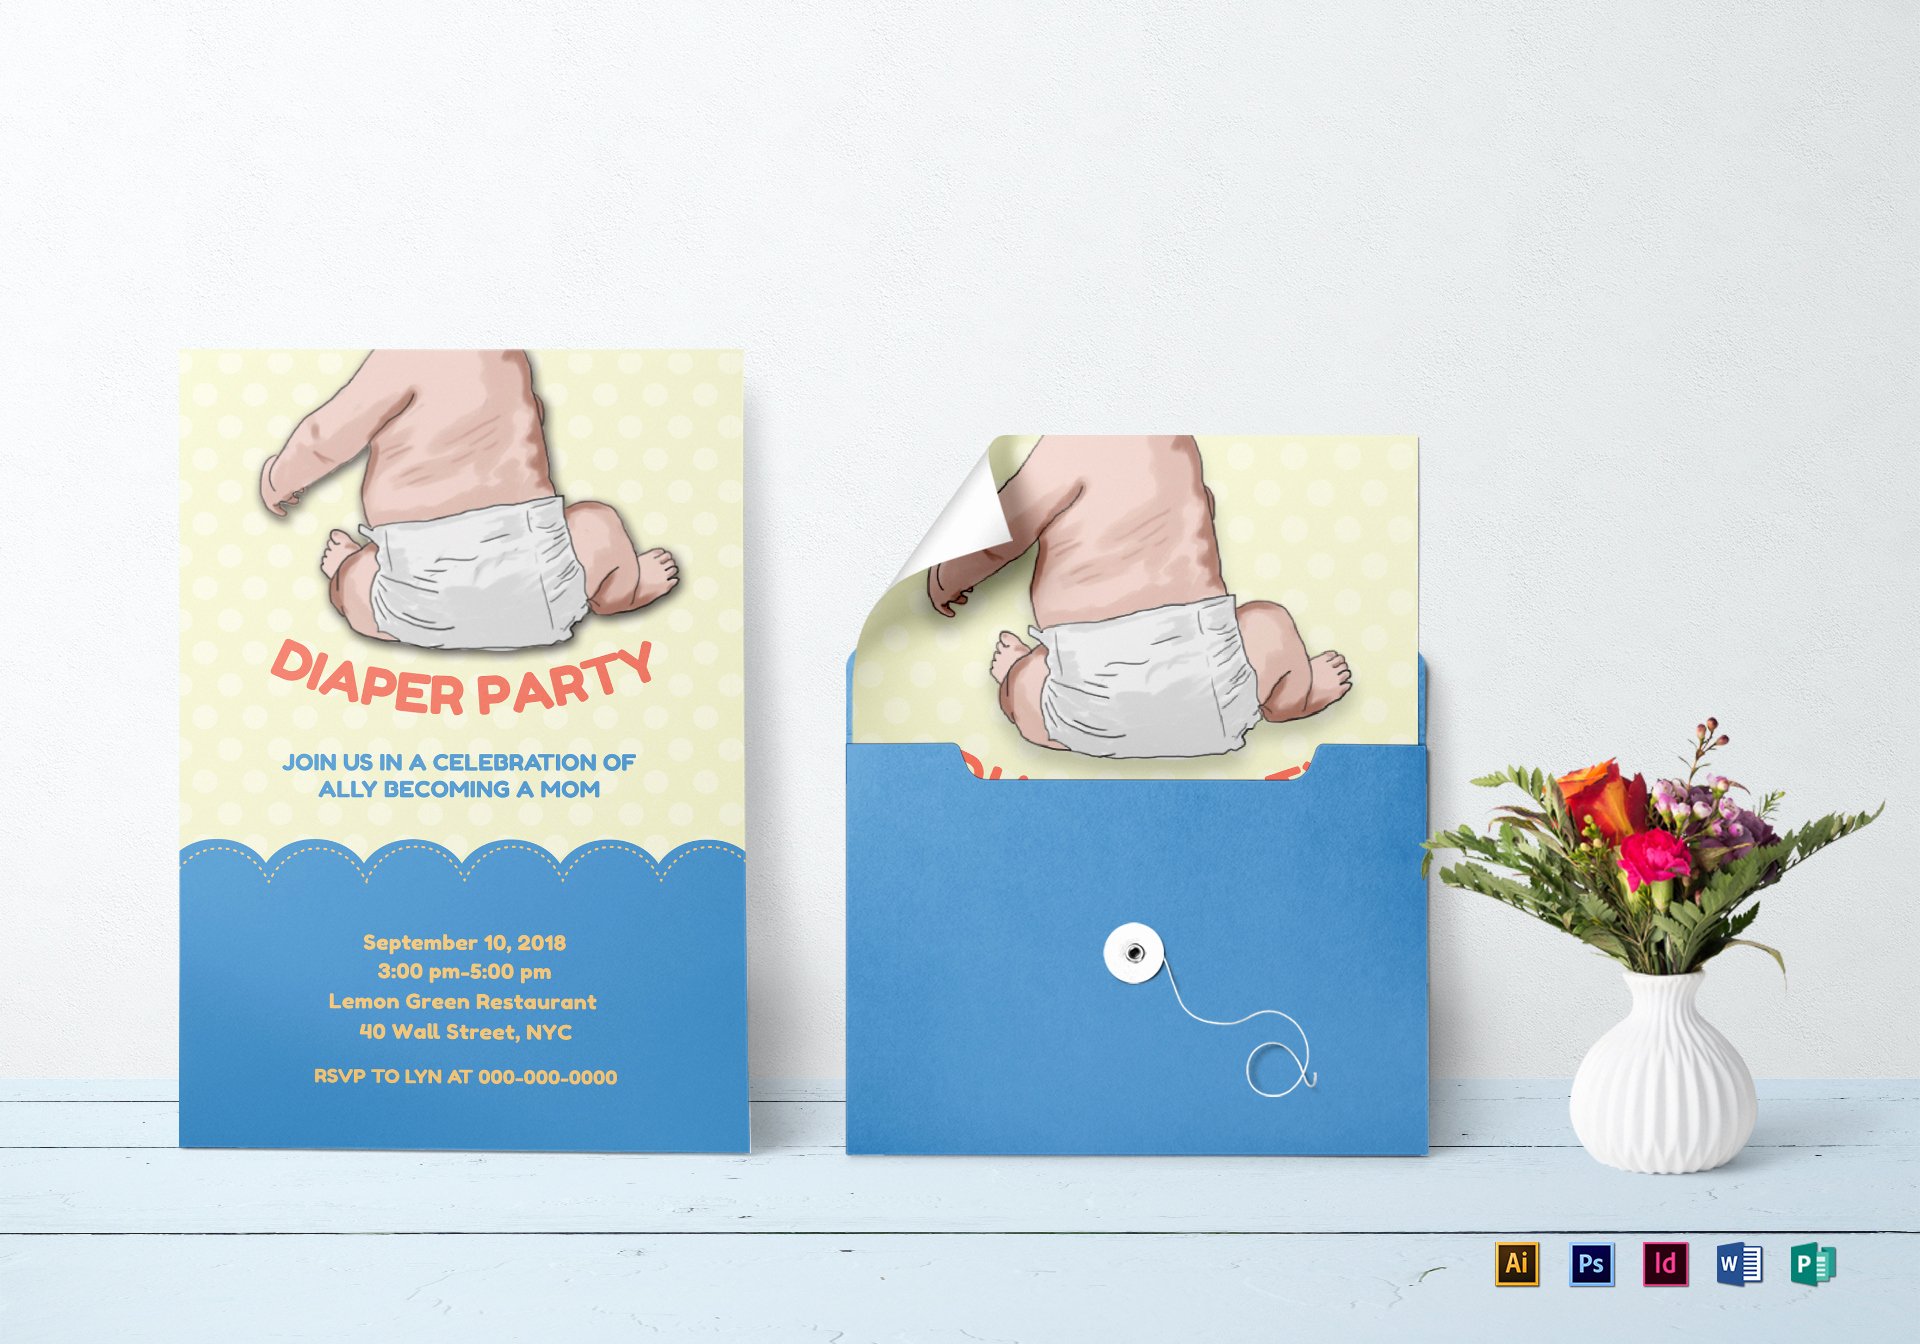 New Mom Diaper Party Invitation Design Template In Psd